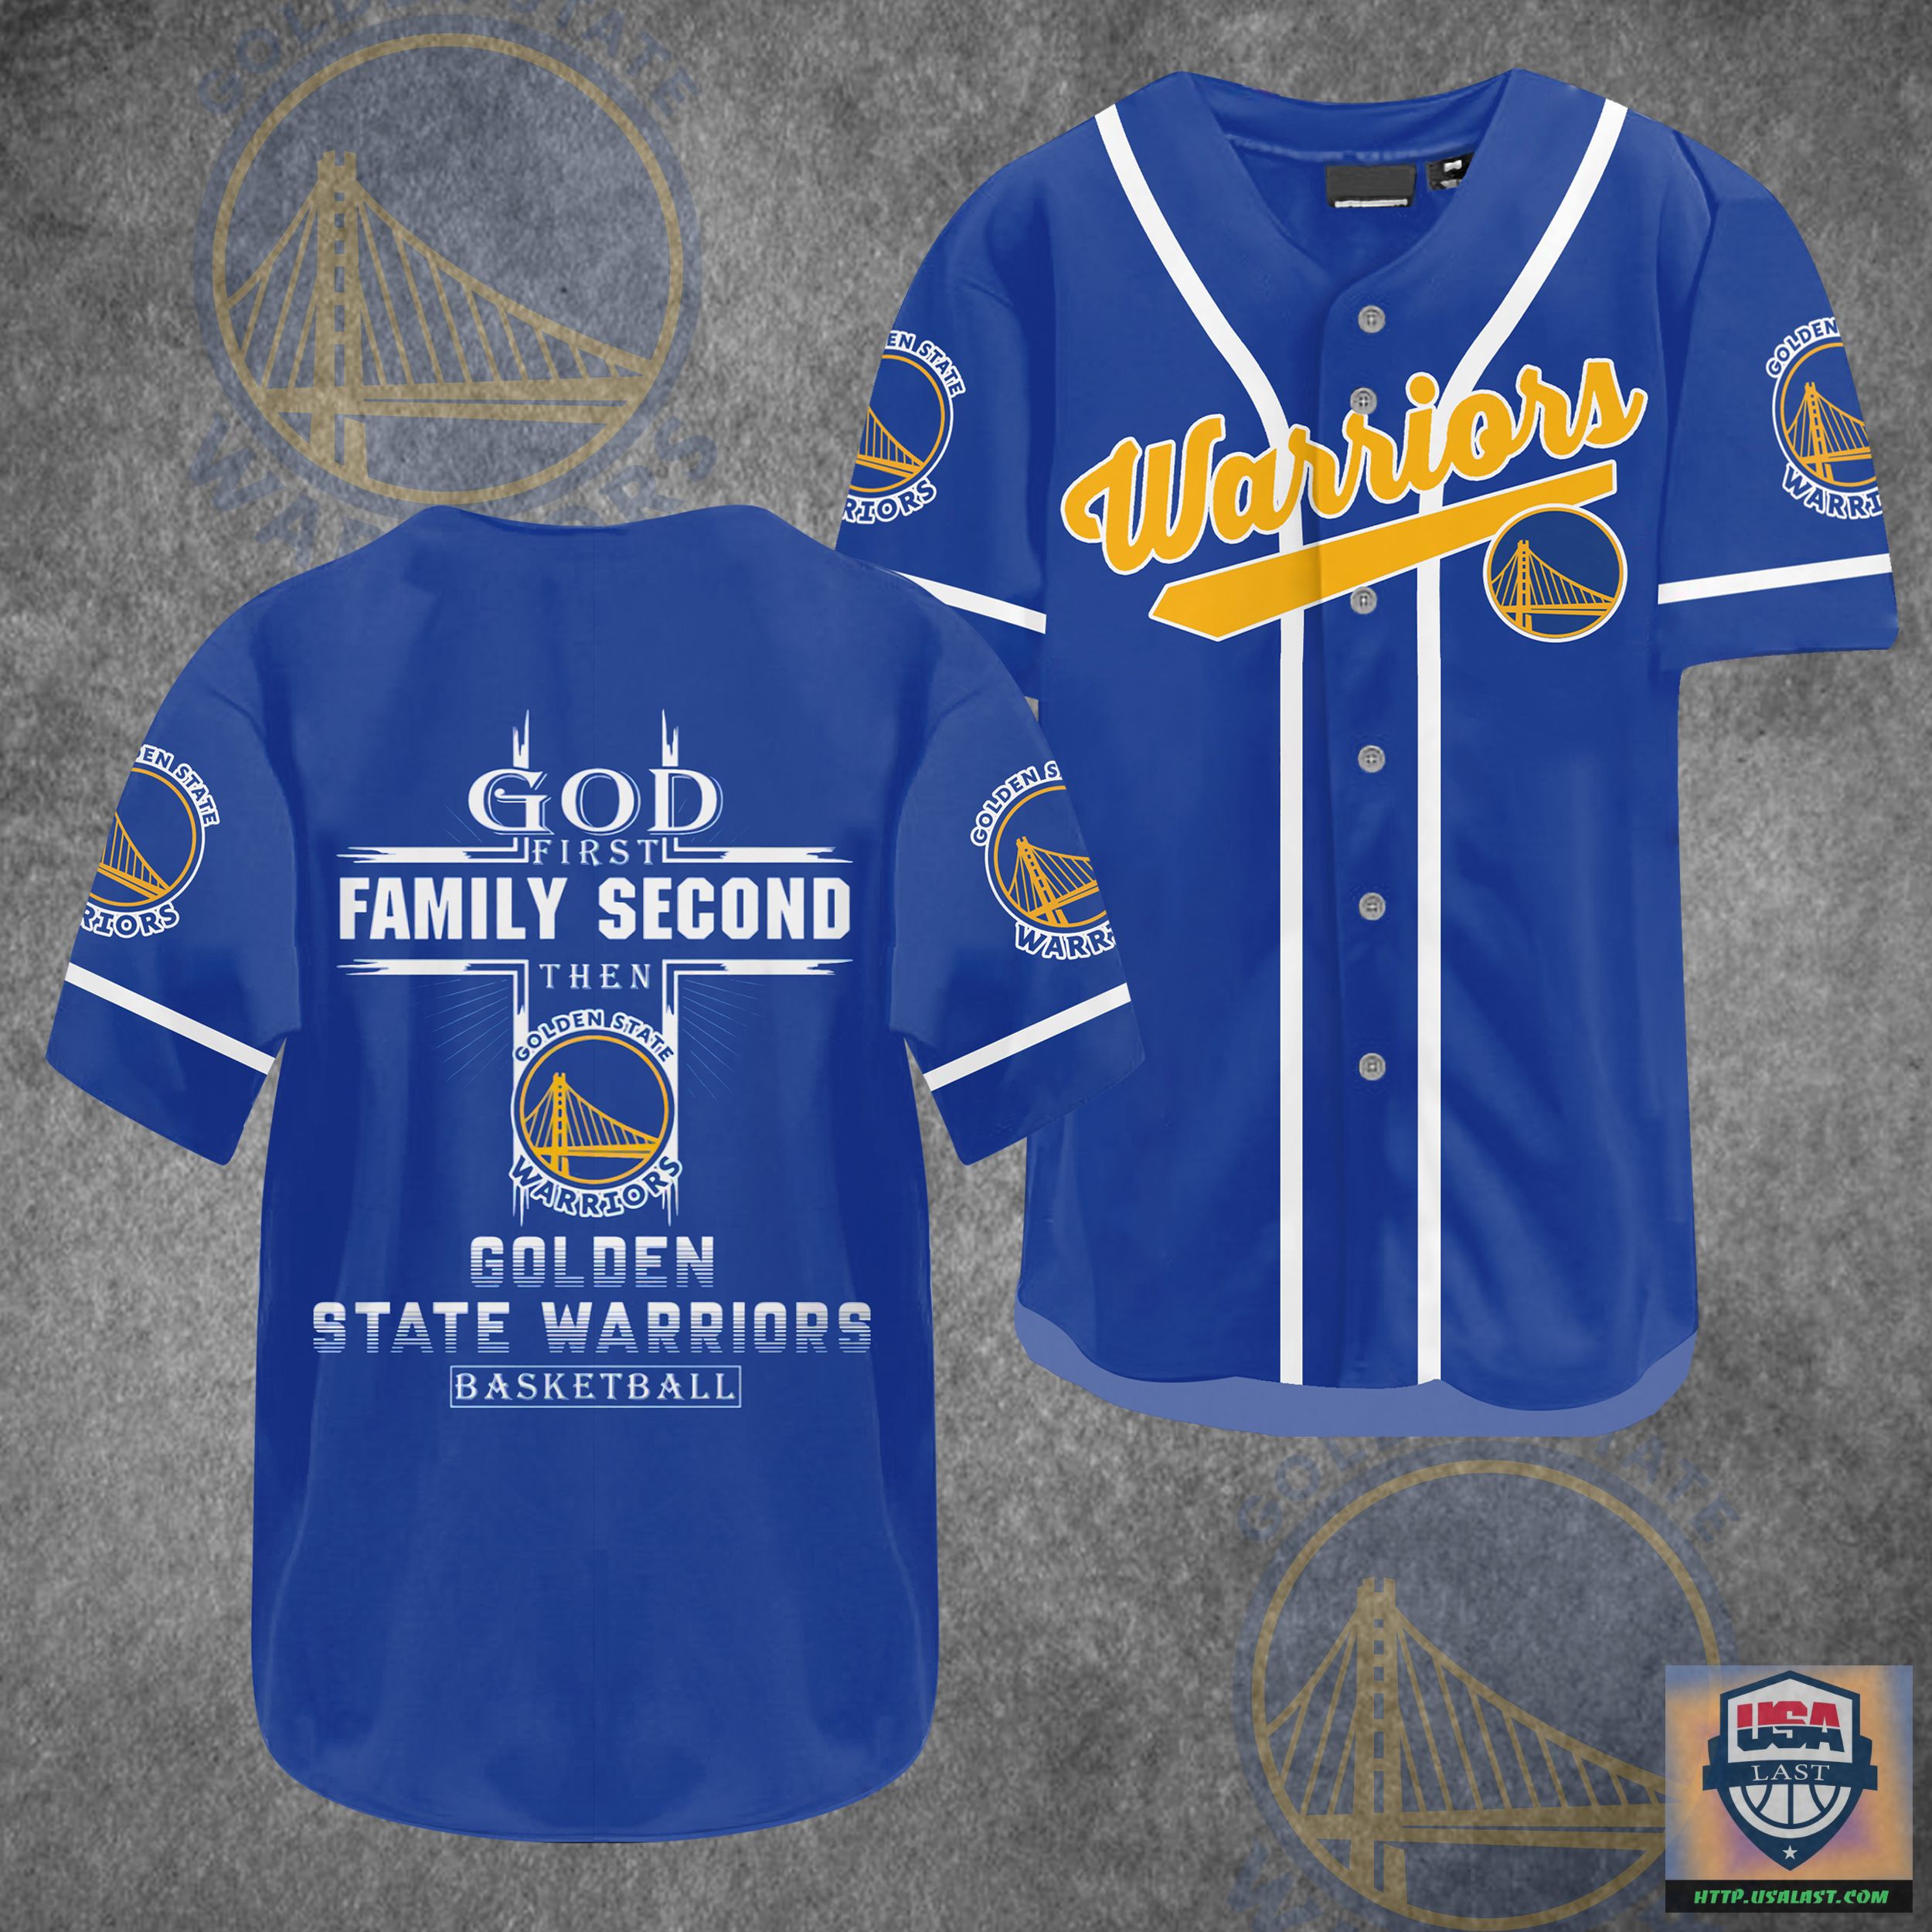 L6ypitfQ-T230722-04xxxGod-First-Family-Second-Then-Golden-State-Warriors-Baseball-Jersey-Shirt.jpg